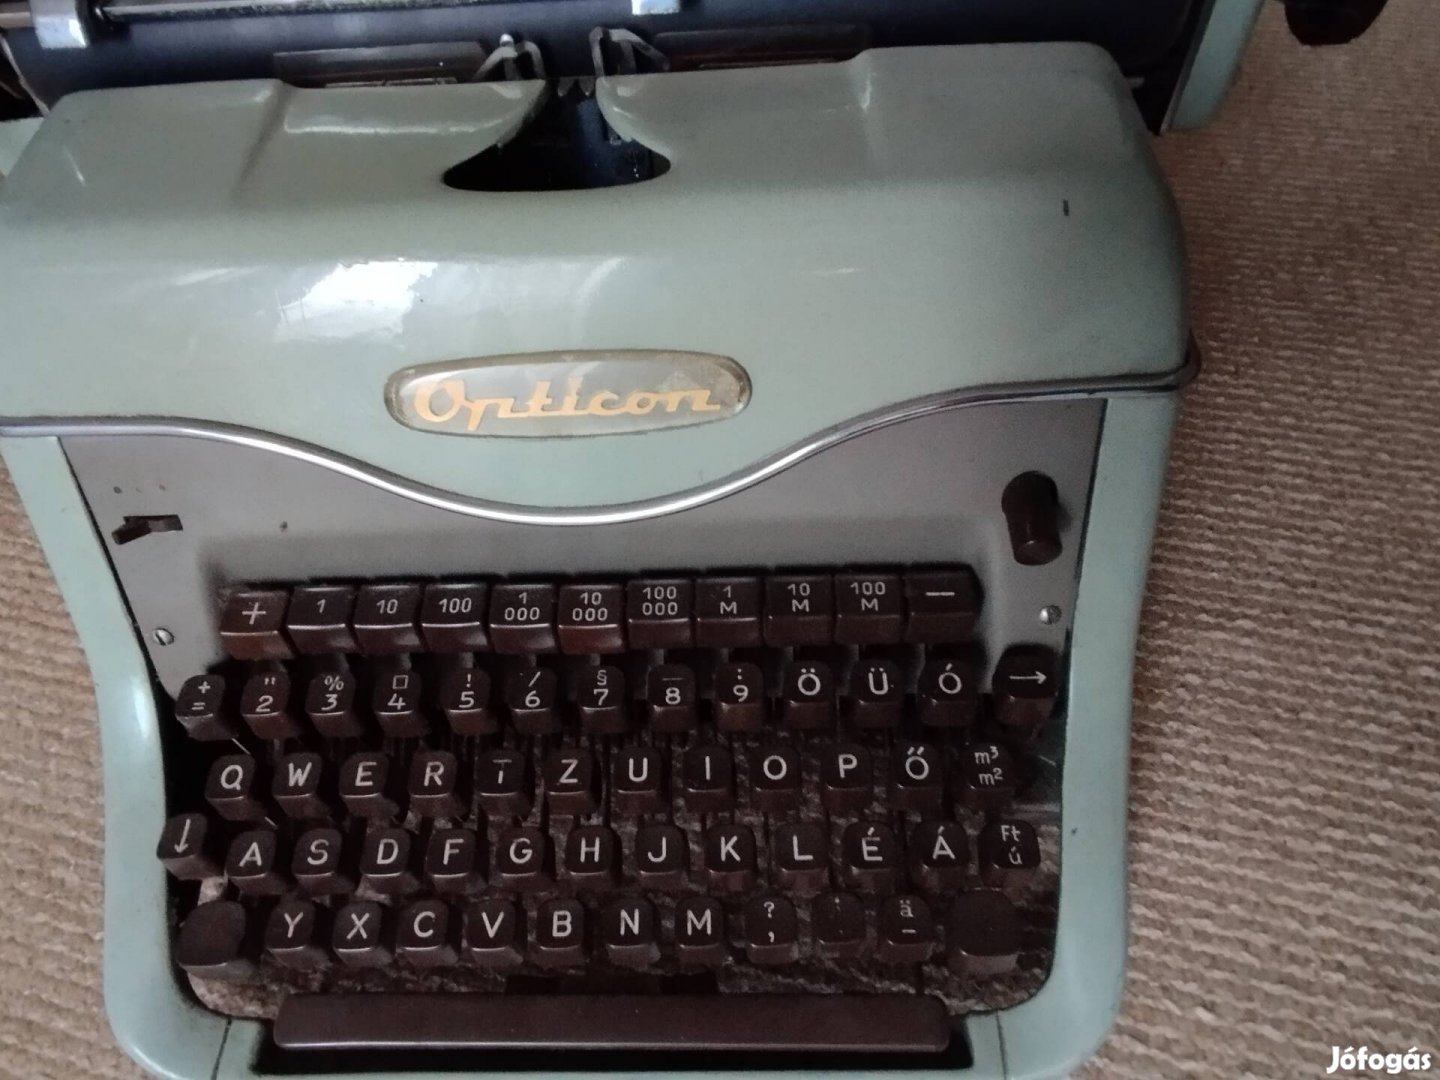 Opticon retro asztali írógép